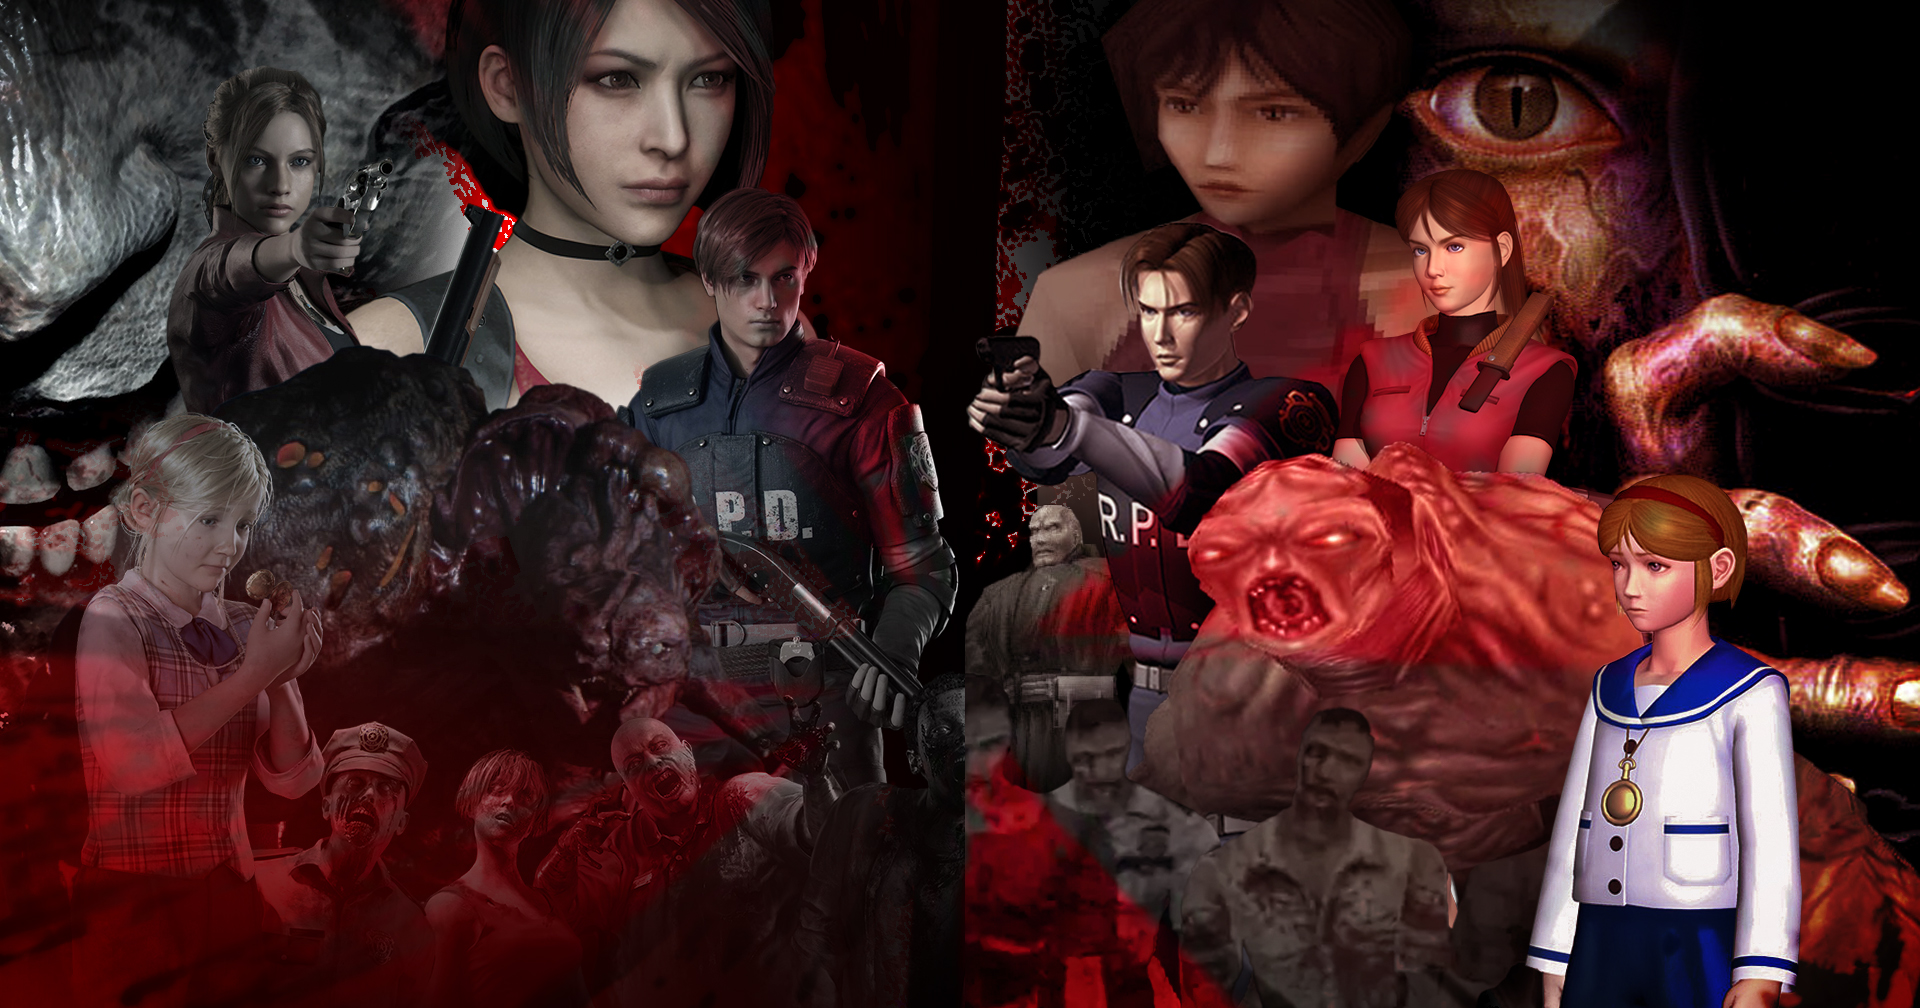 ย้อนอดีต 24 ปีแห่งความทรงจำ Resident Evil 2 ตำนานความหลอนที่ไม่จางหาย